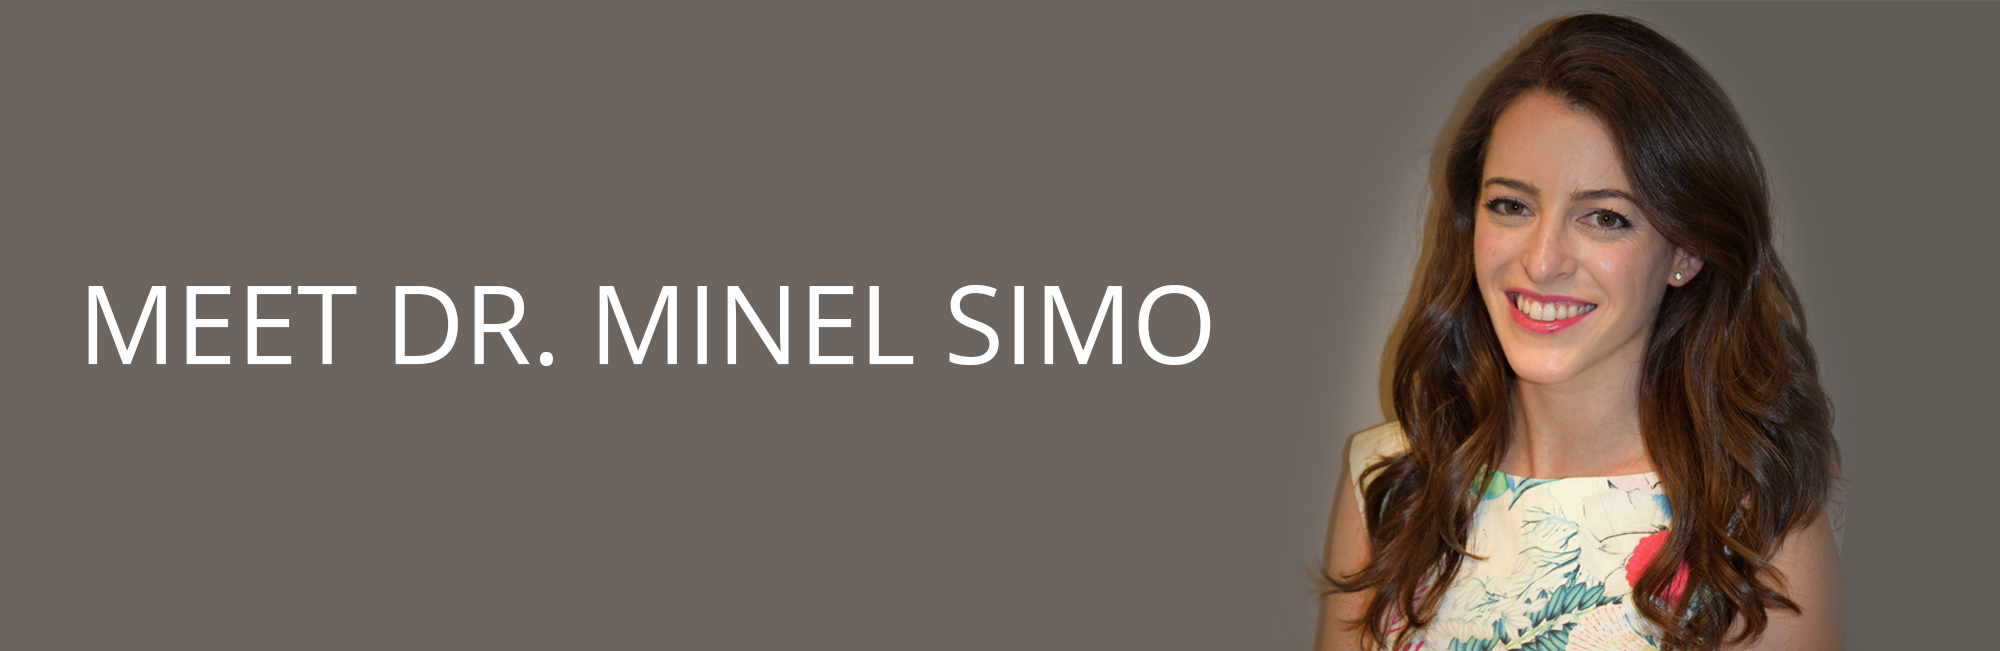 Dr. Minel Simo